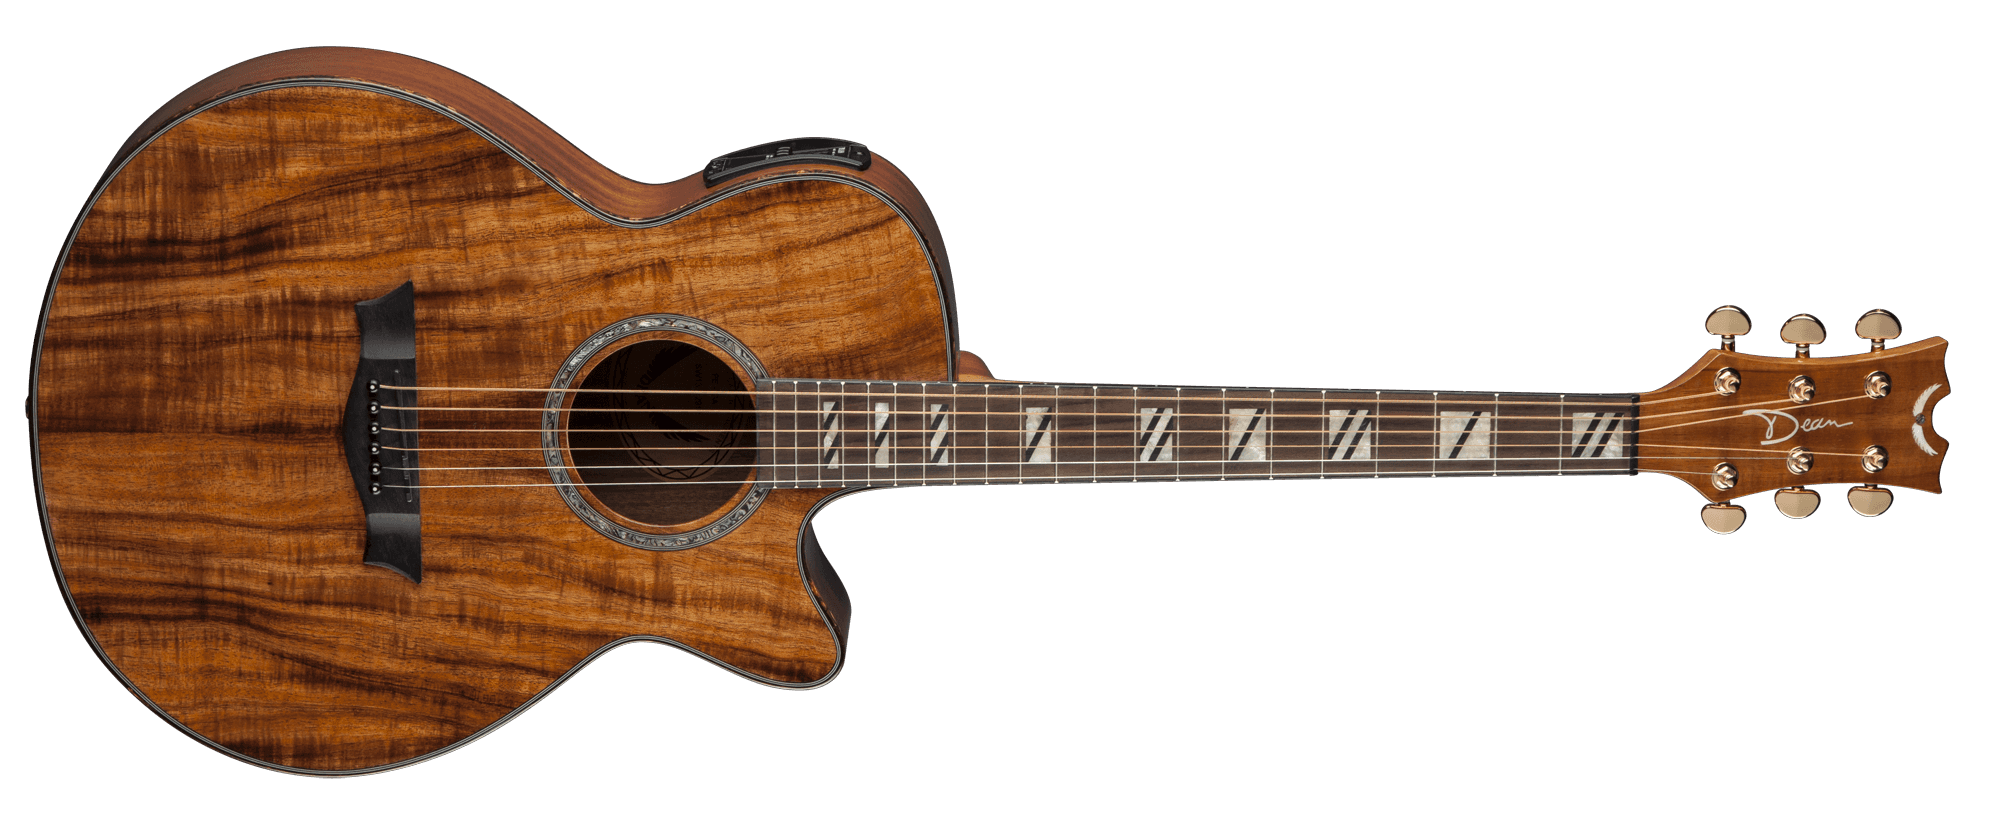 Immagini trasparenti della chitarra di legno